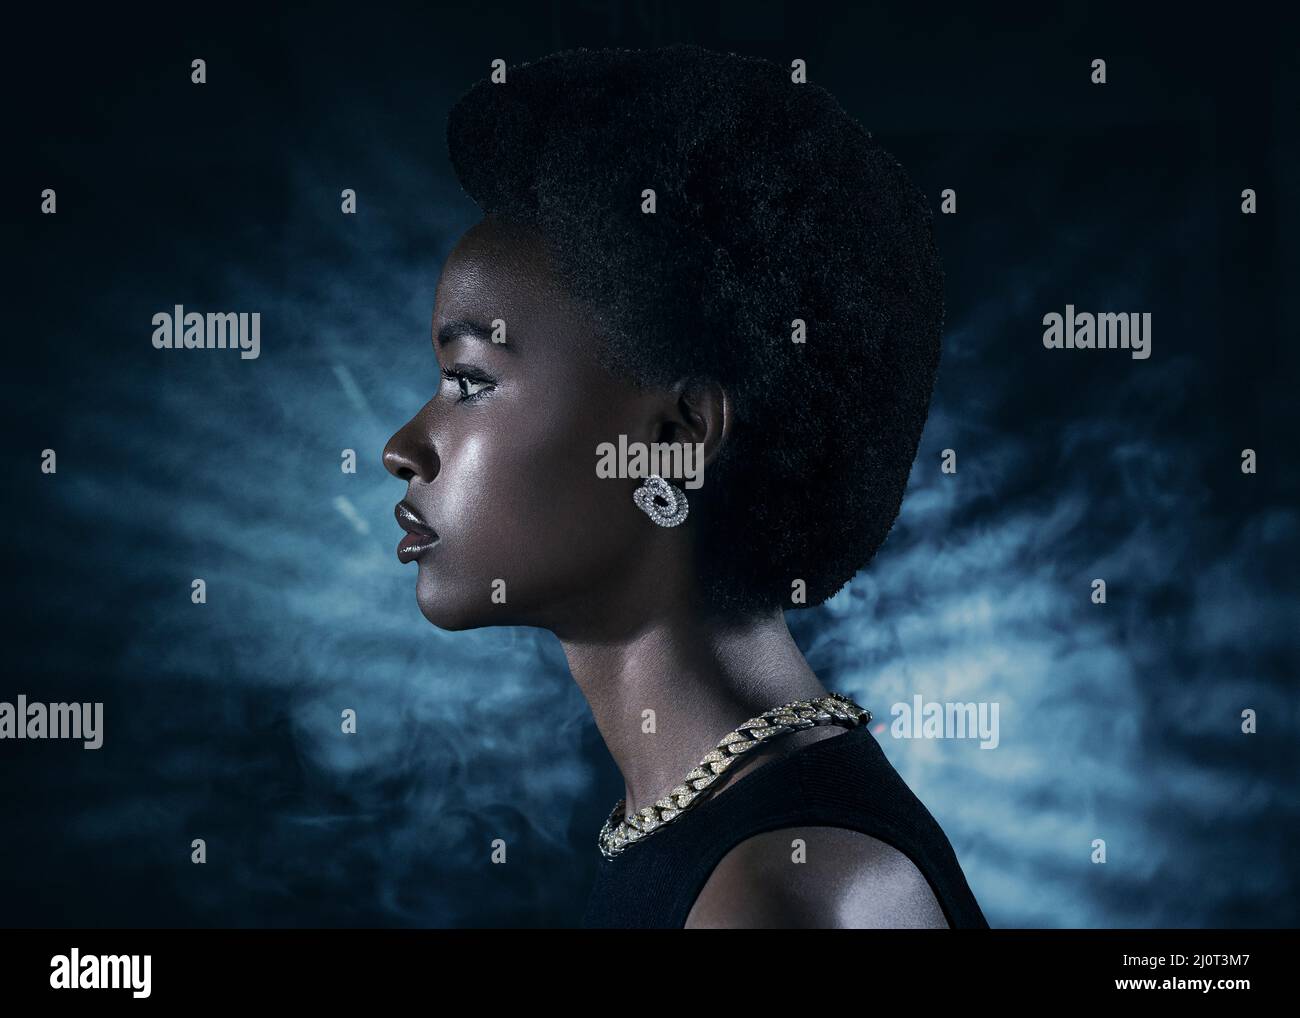 Jeune femme noir profil portrait de beauté sur fond sombre Banque D'Images